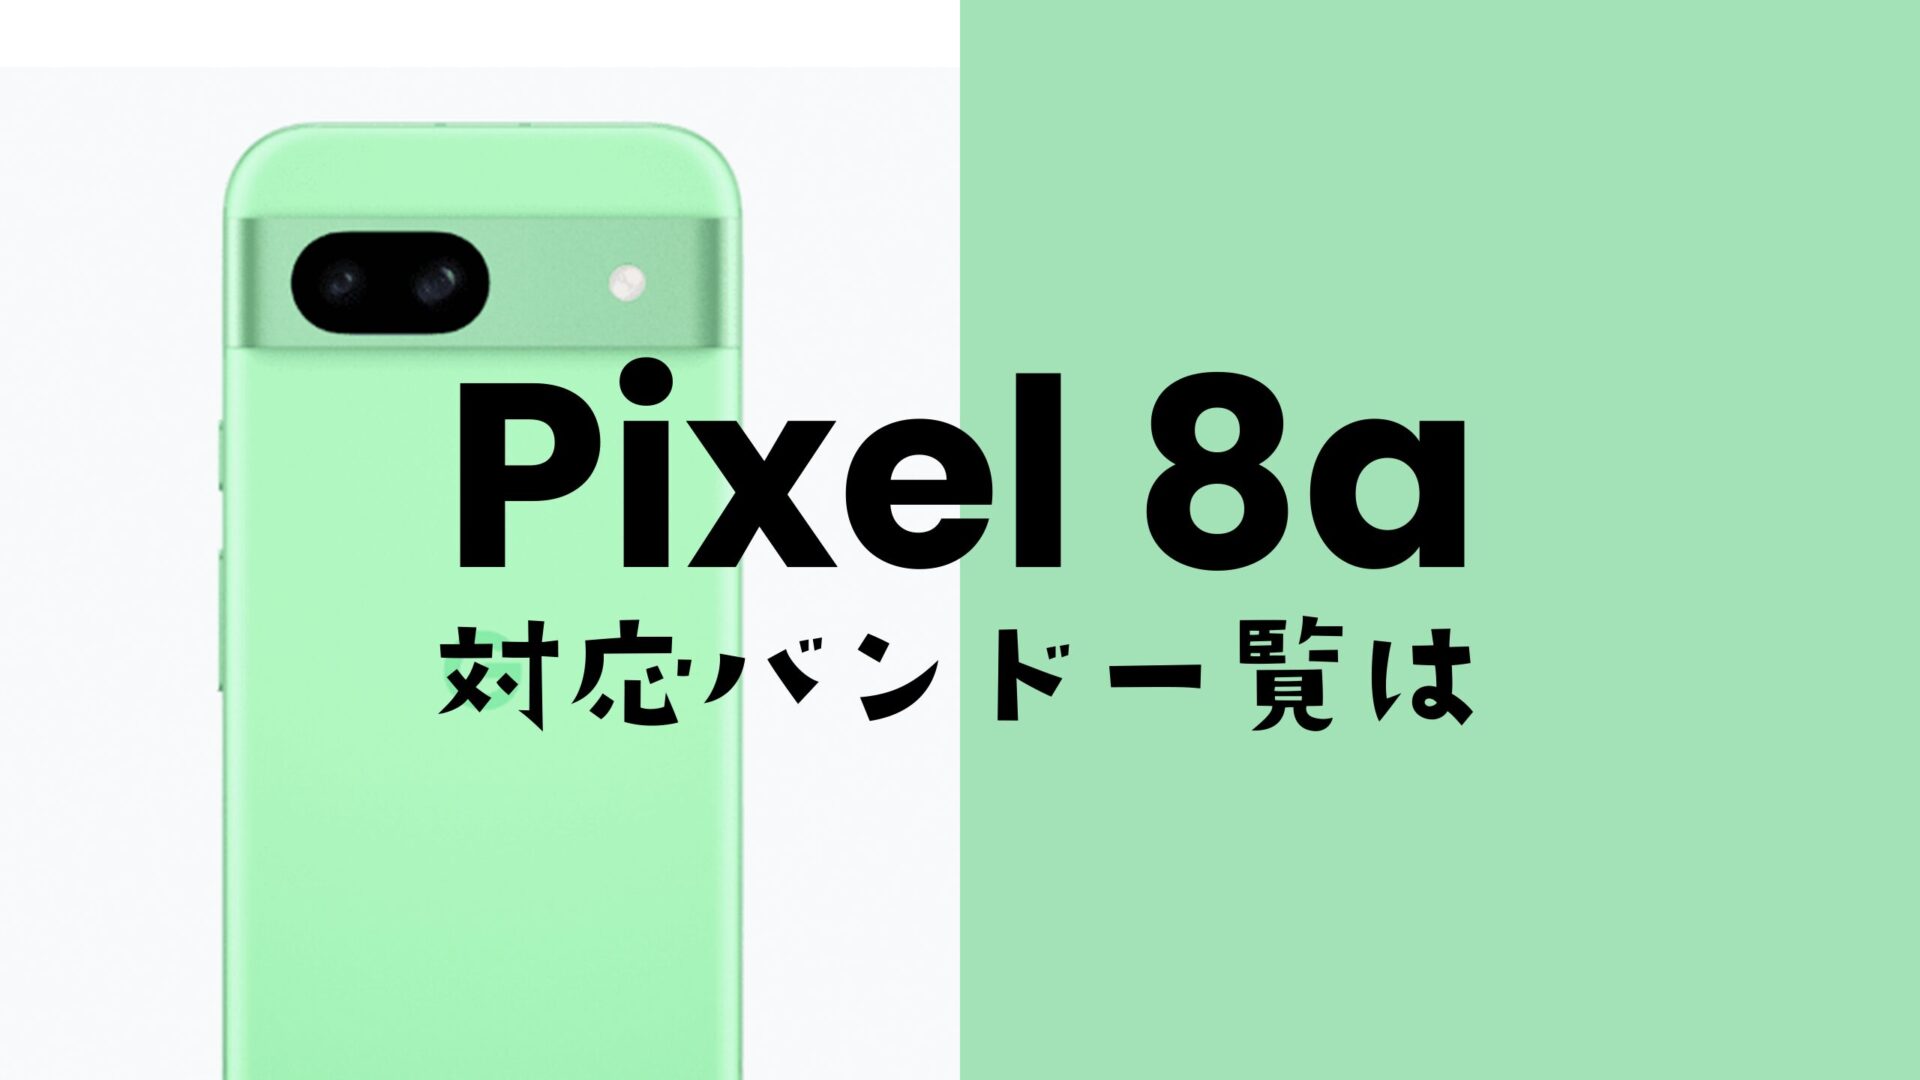 Google Pixel 8a(ピクセル8a)の対応バンドを解説。大手4キャリアの4G/5Gにバランスよく対応。のサムネイル画像